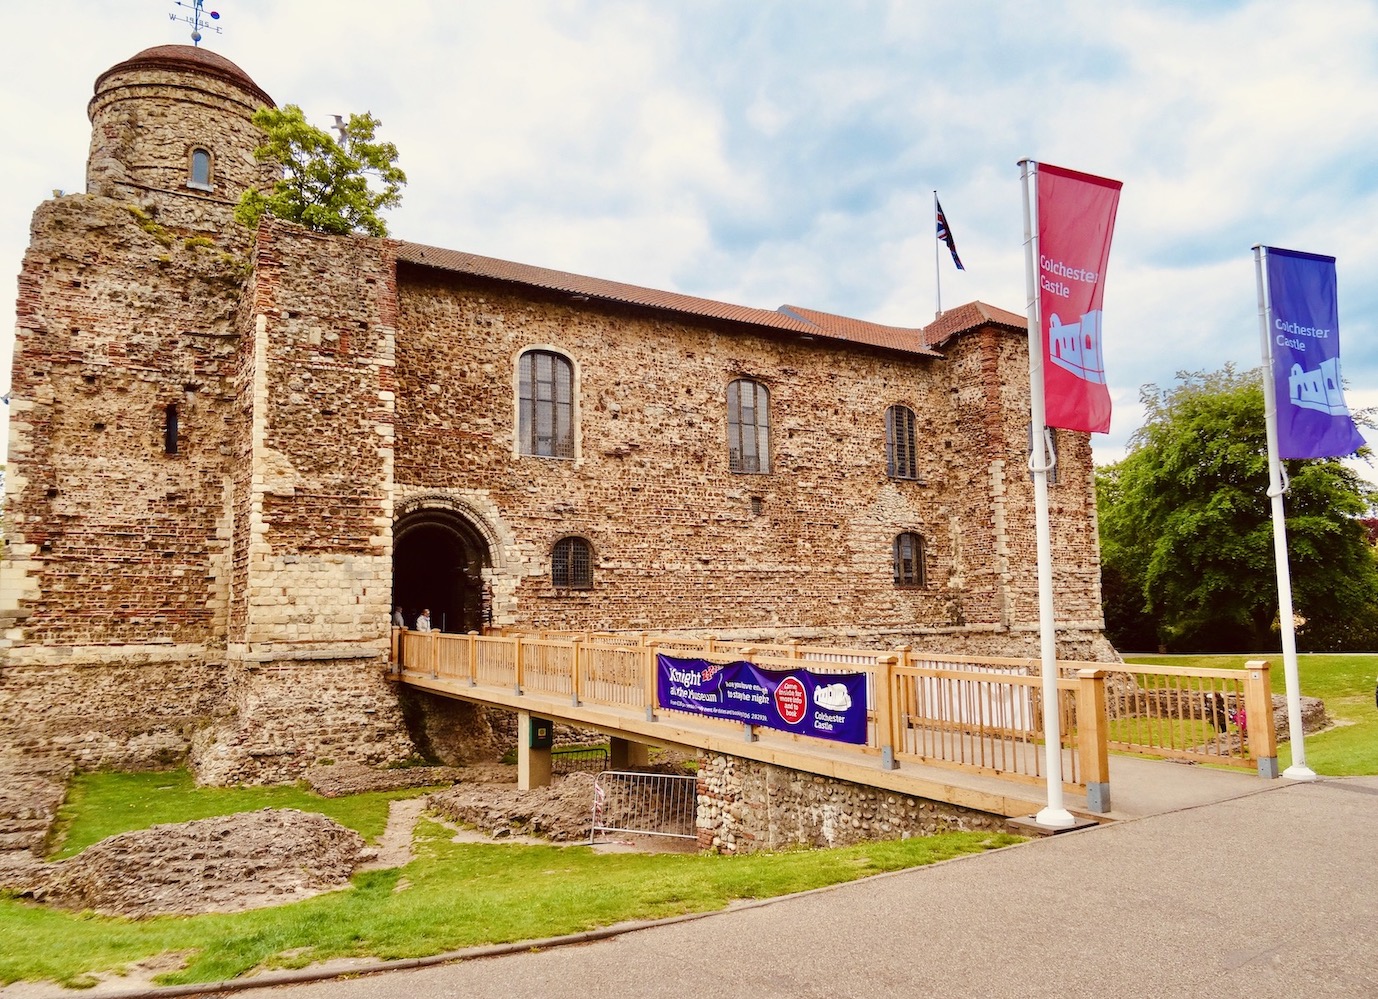 Colchester Castle Museum